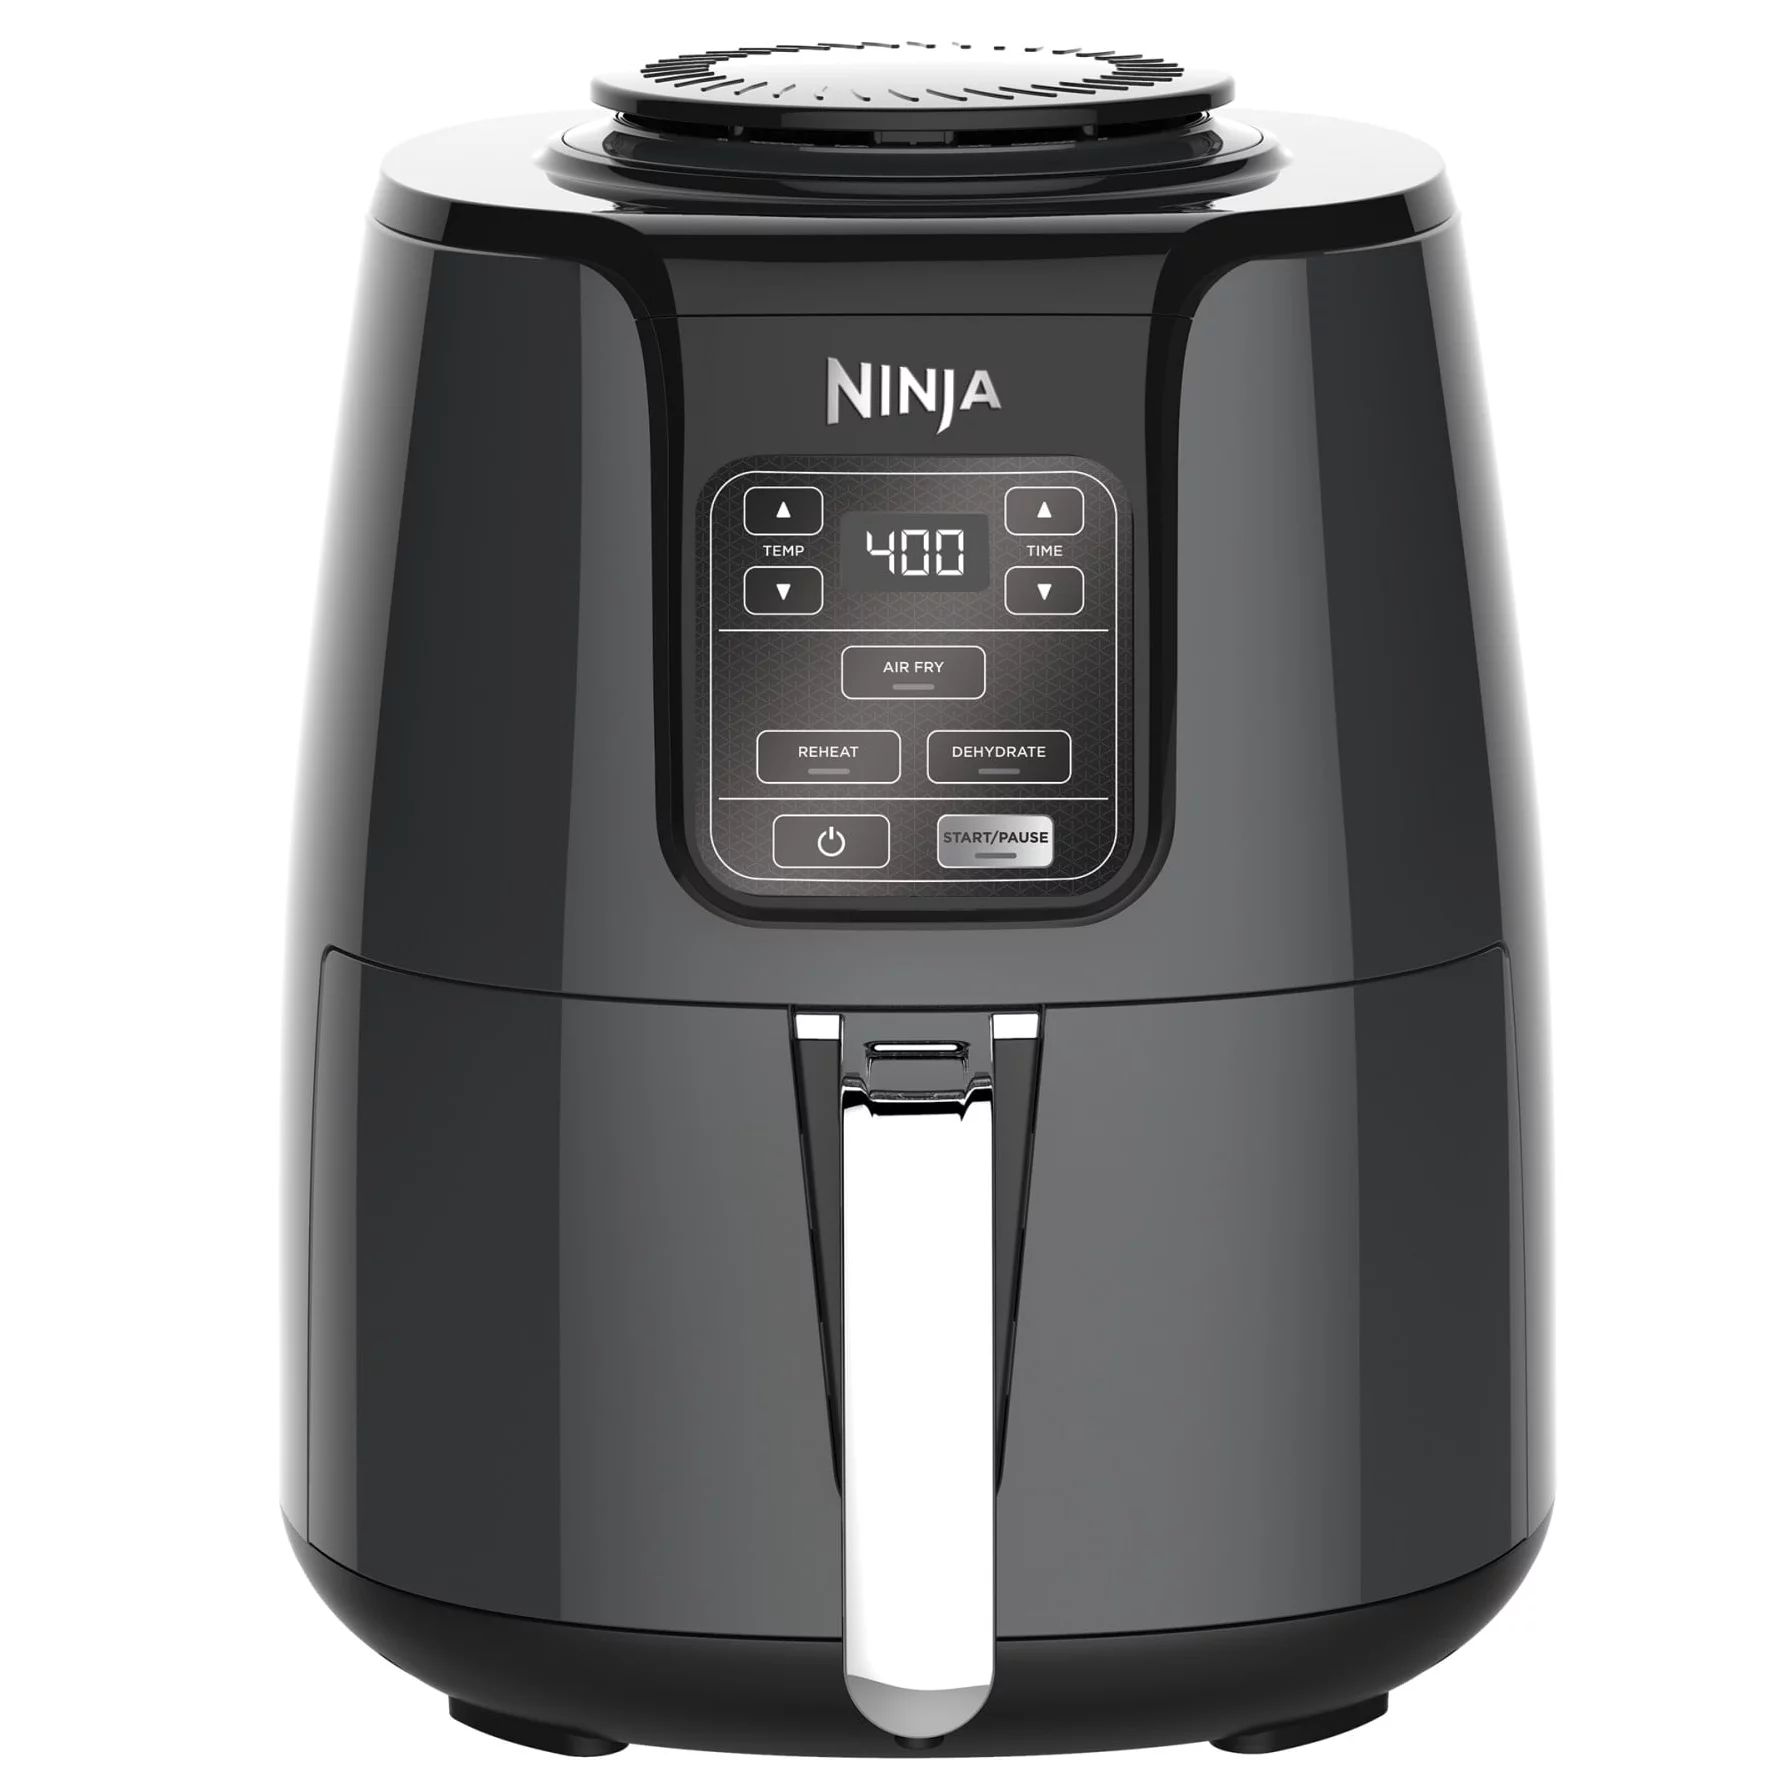 Ninja 4 Quart Air Fryer with Reheat & Dehydrate, Black, Silver, AF100WM - Walmart.com | Walmart (US)